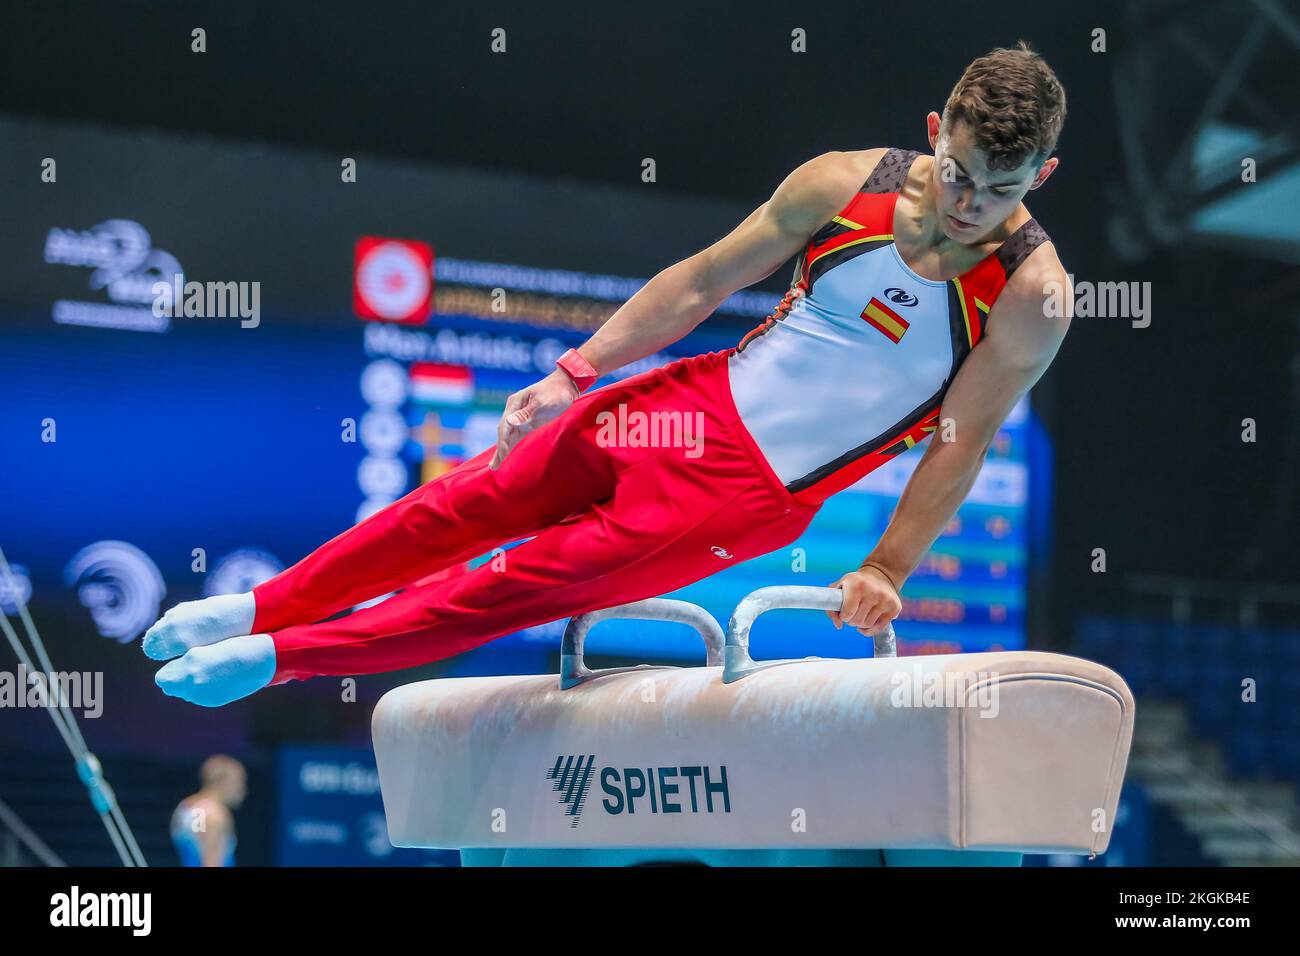 Szczecin, Pologne, 10 avril 2019: L'athlète olympique Mir Nicolau d'Espagne participe au championnat de gymnastique artistique sur le cheval de Pommel Banque D'Images